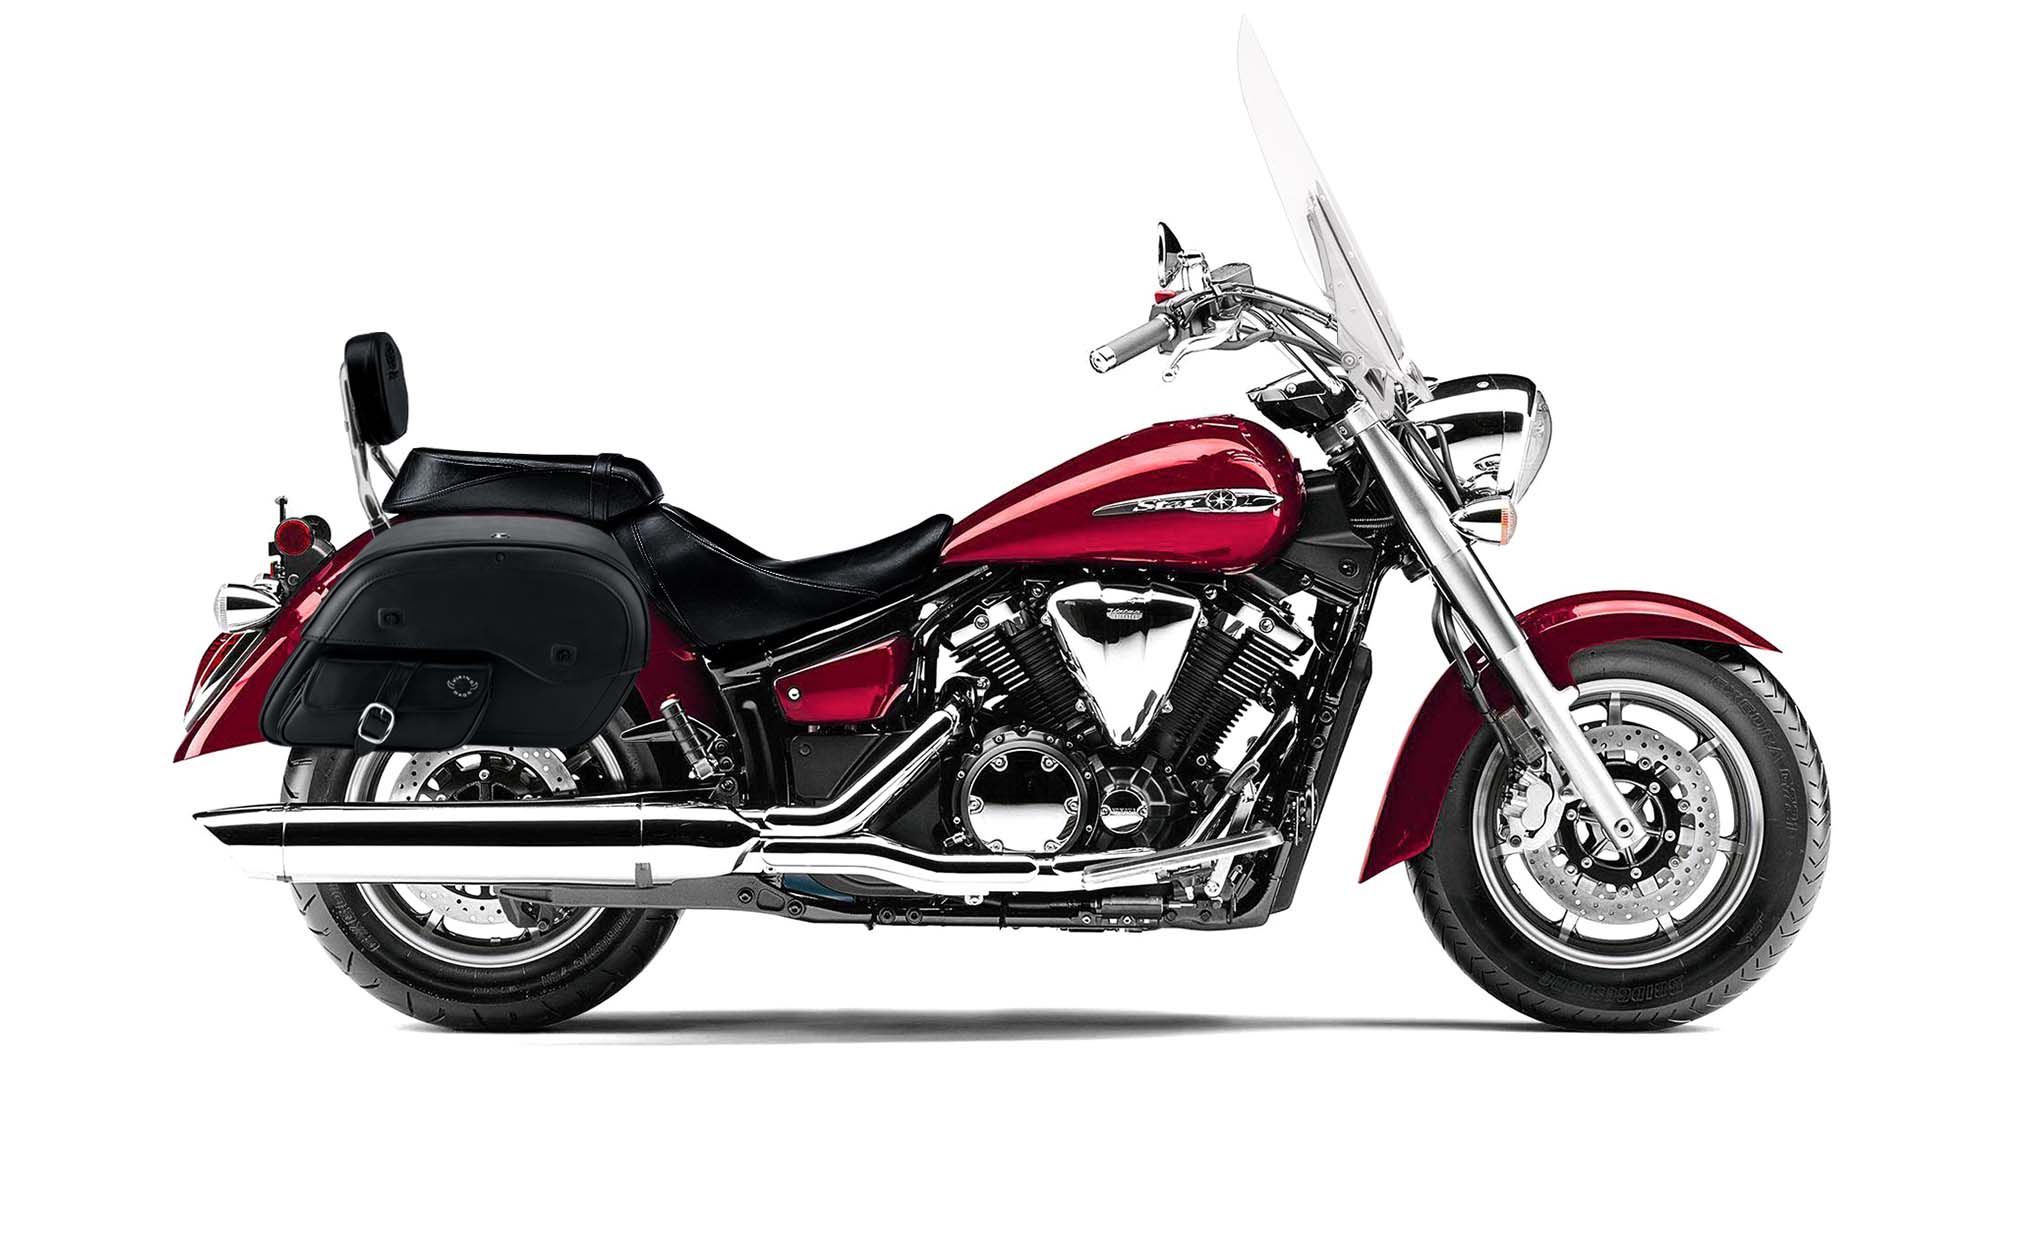 Viking Essential Side Pocket Large Yamaha V Star 1300 Tourer Leather Motorcycle Saddlebags on Bike Photo @expand